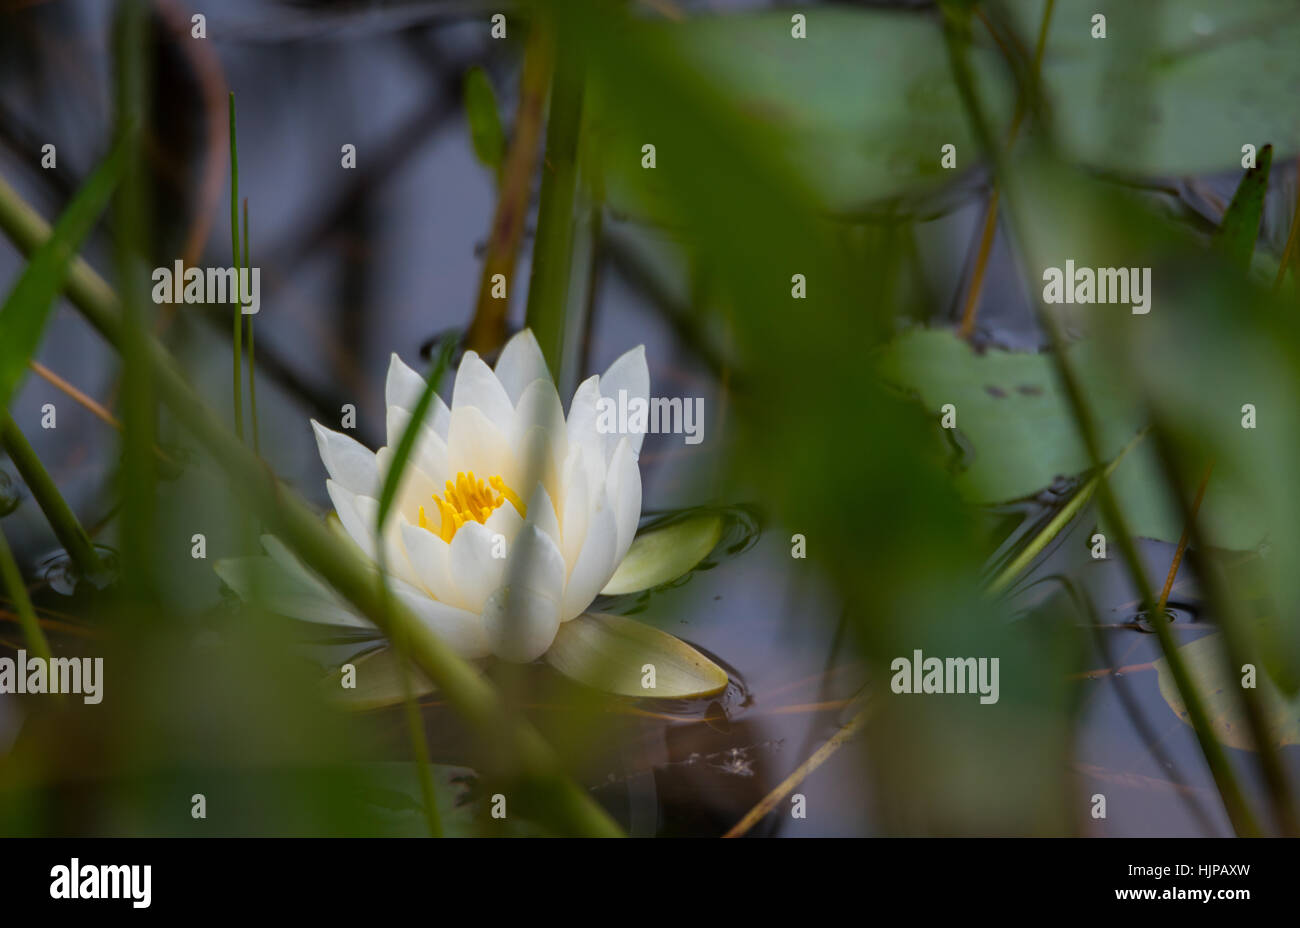 Petali di colore bianco di un galleggiante Nymphaea alba ninfea bianca. Nymphaea alba - selvatici acqua galleggiante Lily con petali di colore bianco e giallo stame. Foto Stock